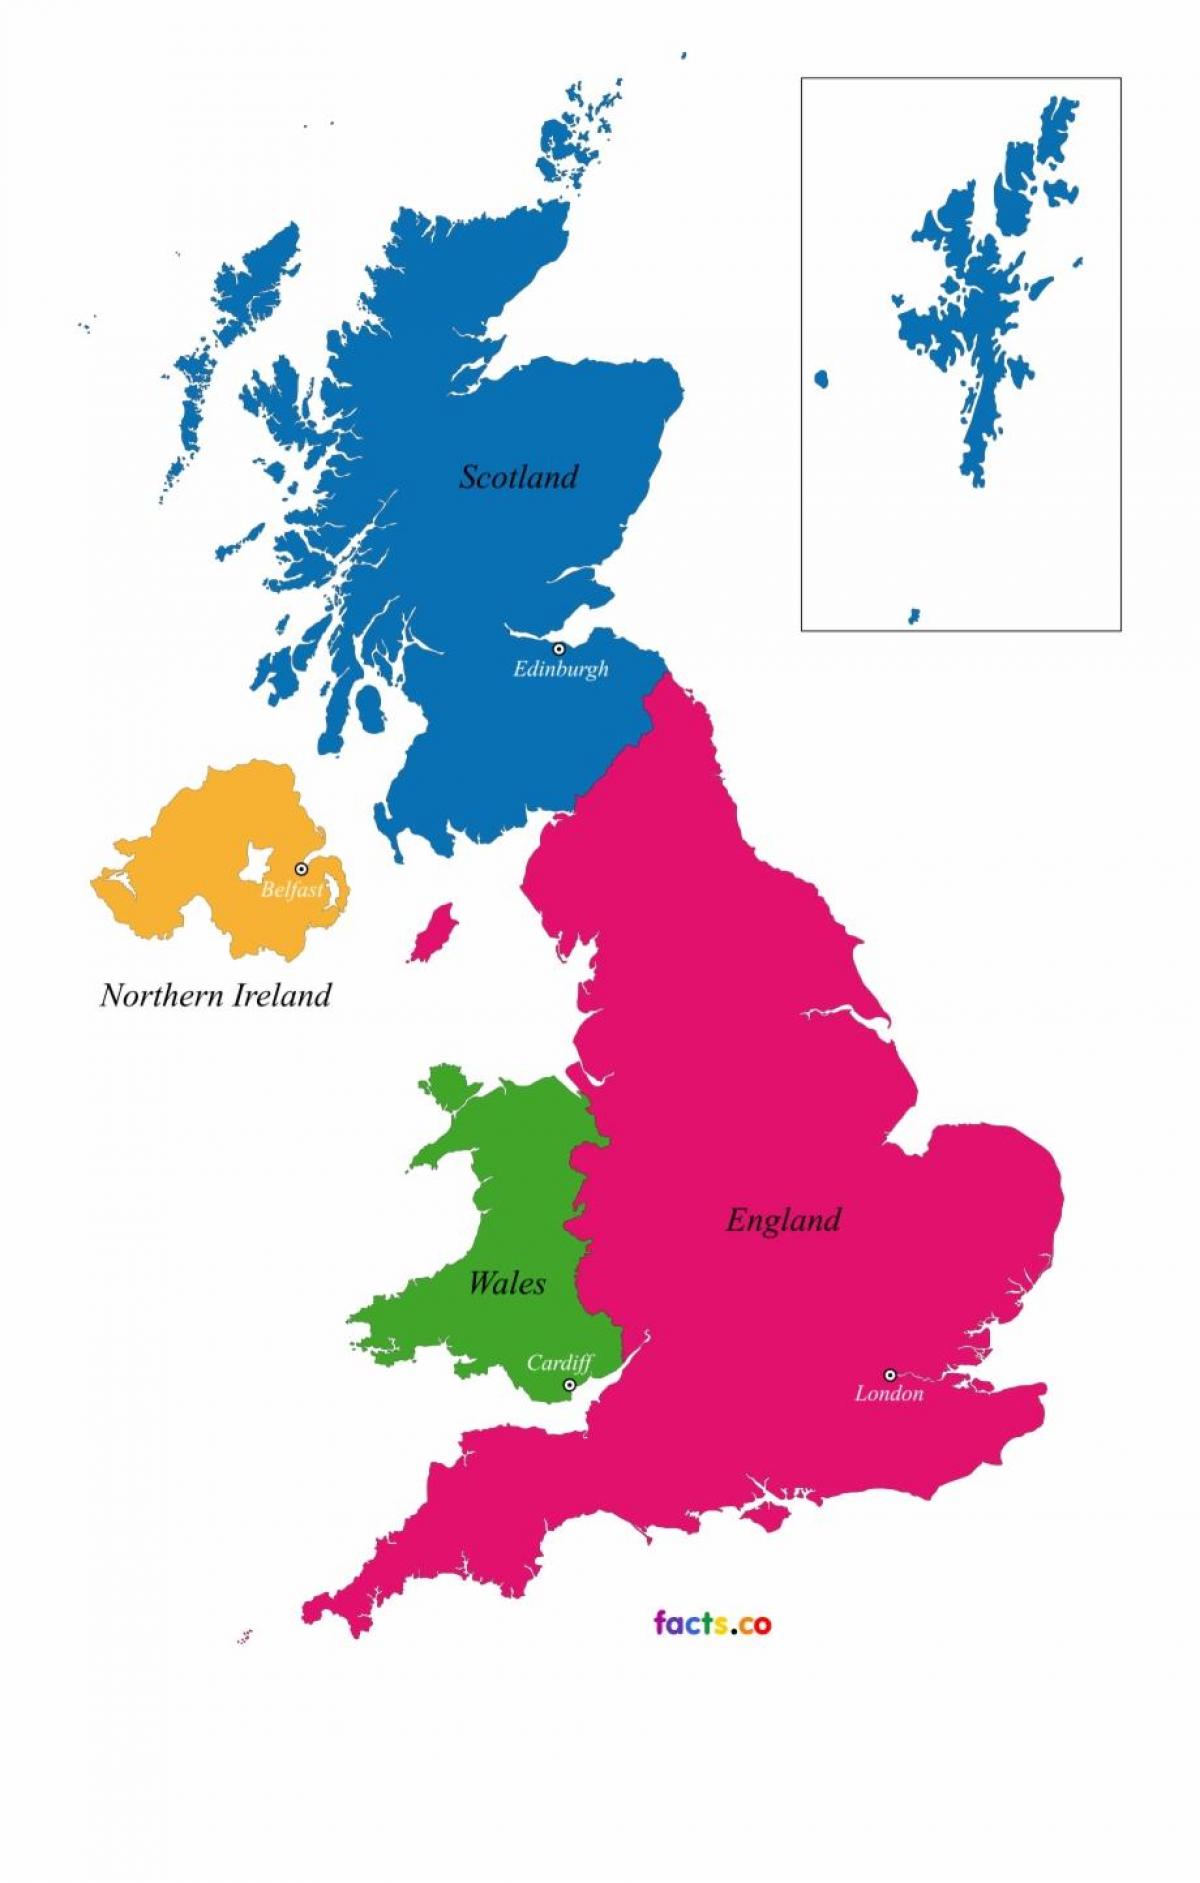 المملكة المتحدة (المملكة المتحدة) خريطة الدولة